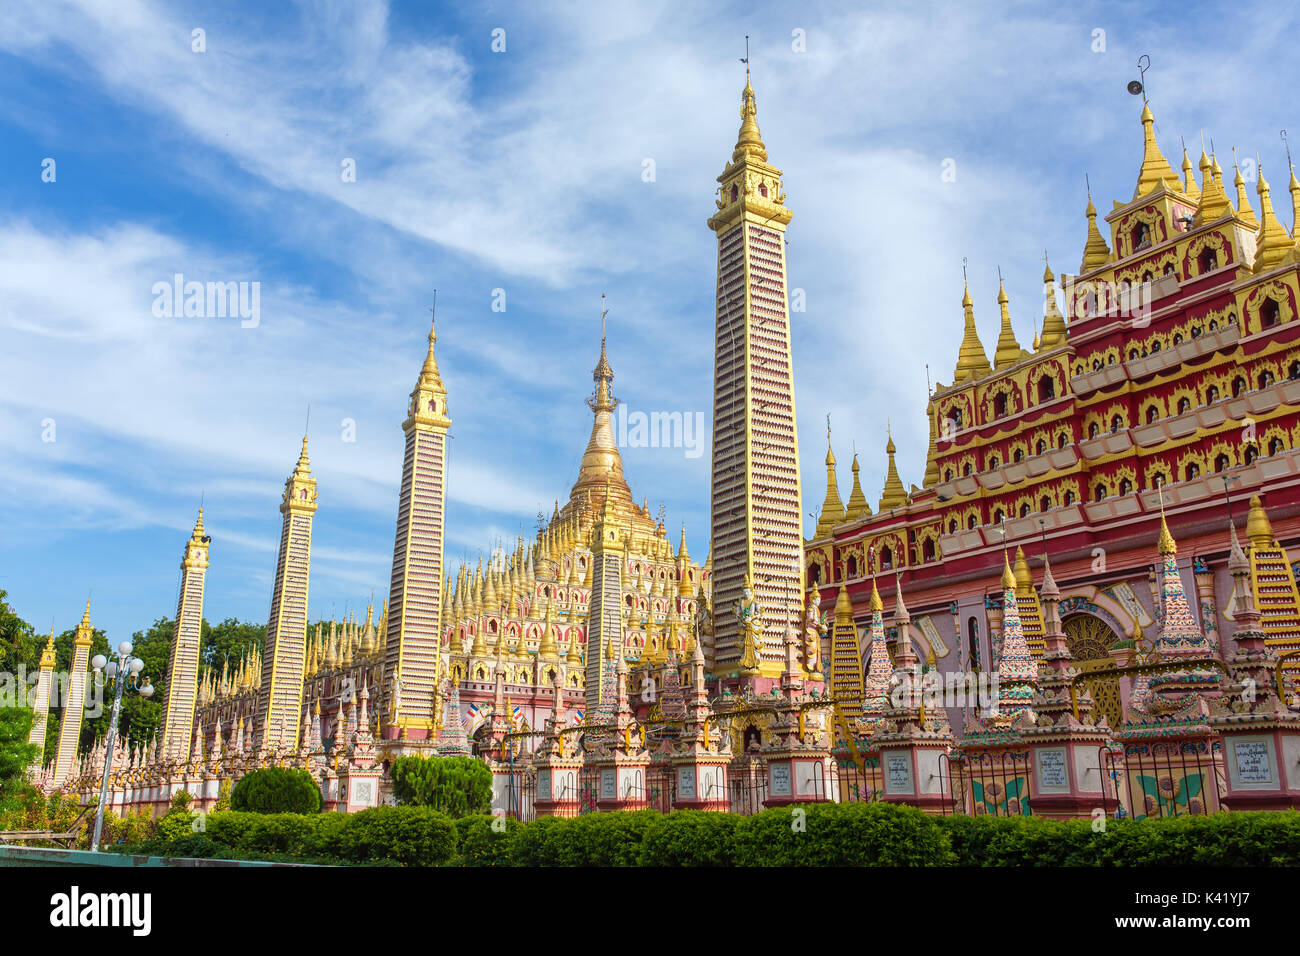 Schöne buddhistische Pagode, die thanboddhay Phaya in Monywa, Myanmar Stockfoto